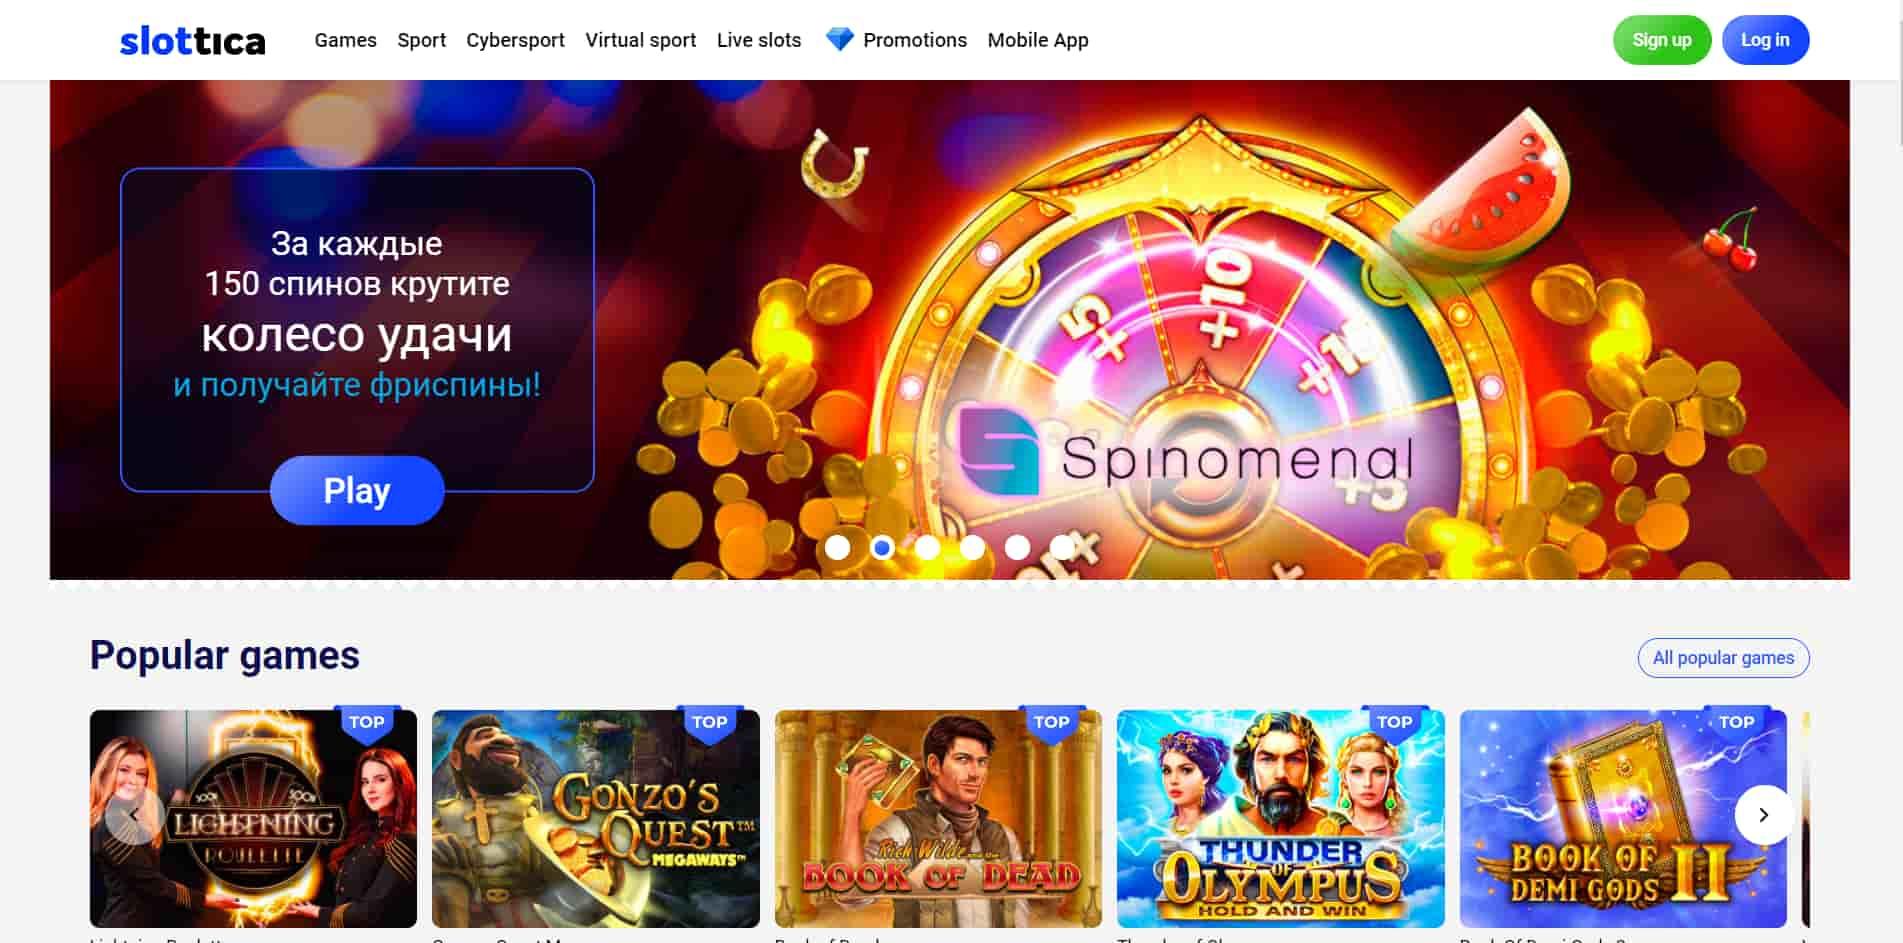 Slottica casino homepage